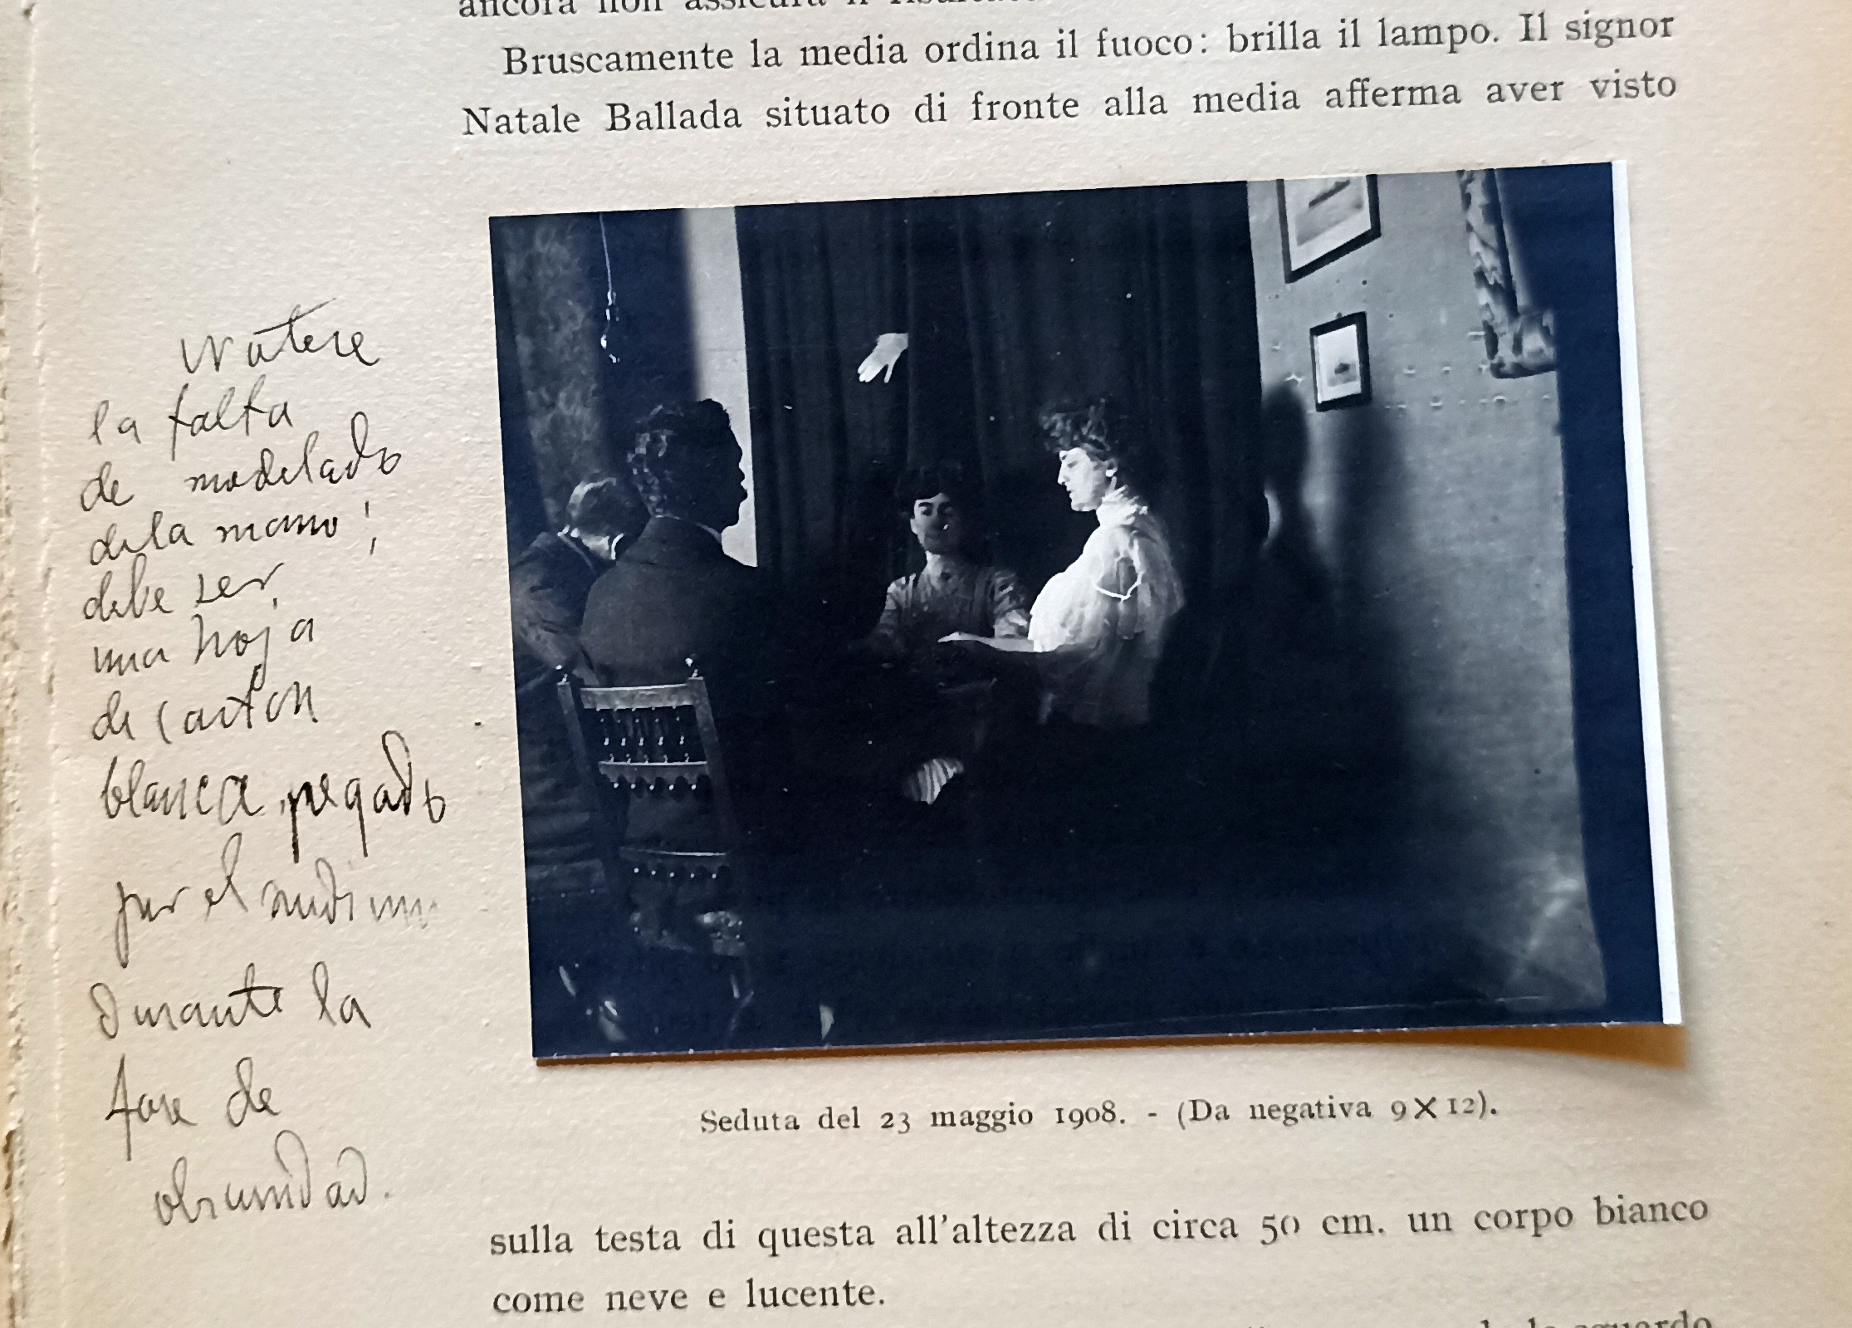 Mano de un presunto fantasma en el libro 'Fotografie di Fantasmi', con una nota de Cajal: 